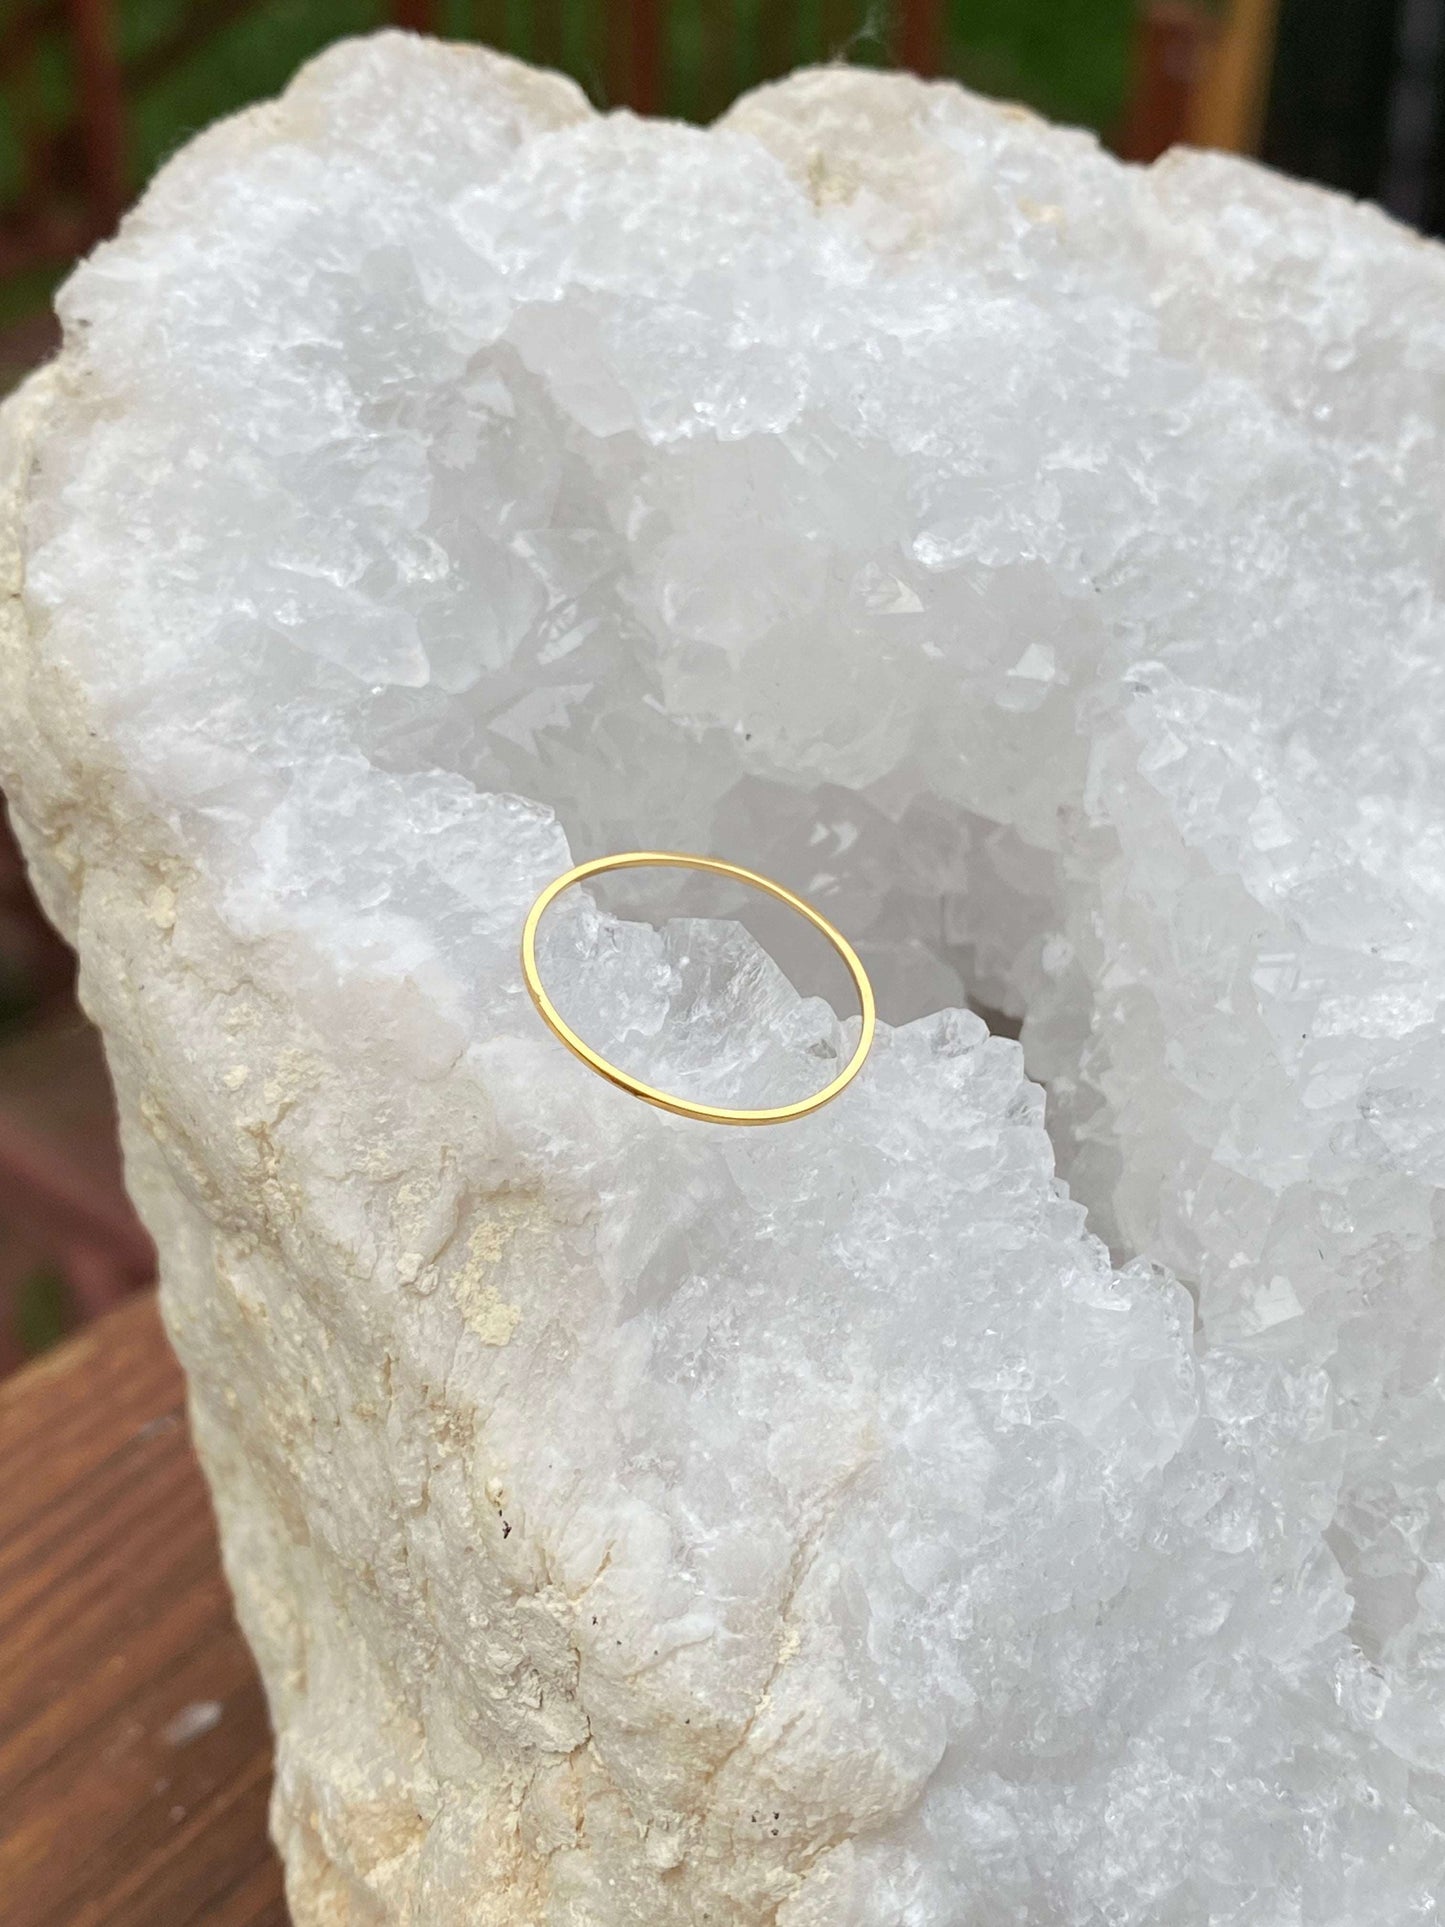 
                  
                    Super Thin Minimalist Ring
                  
                